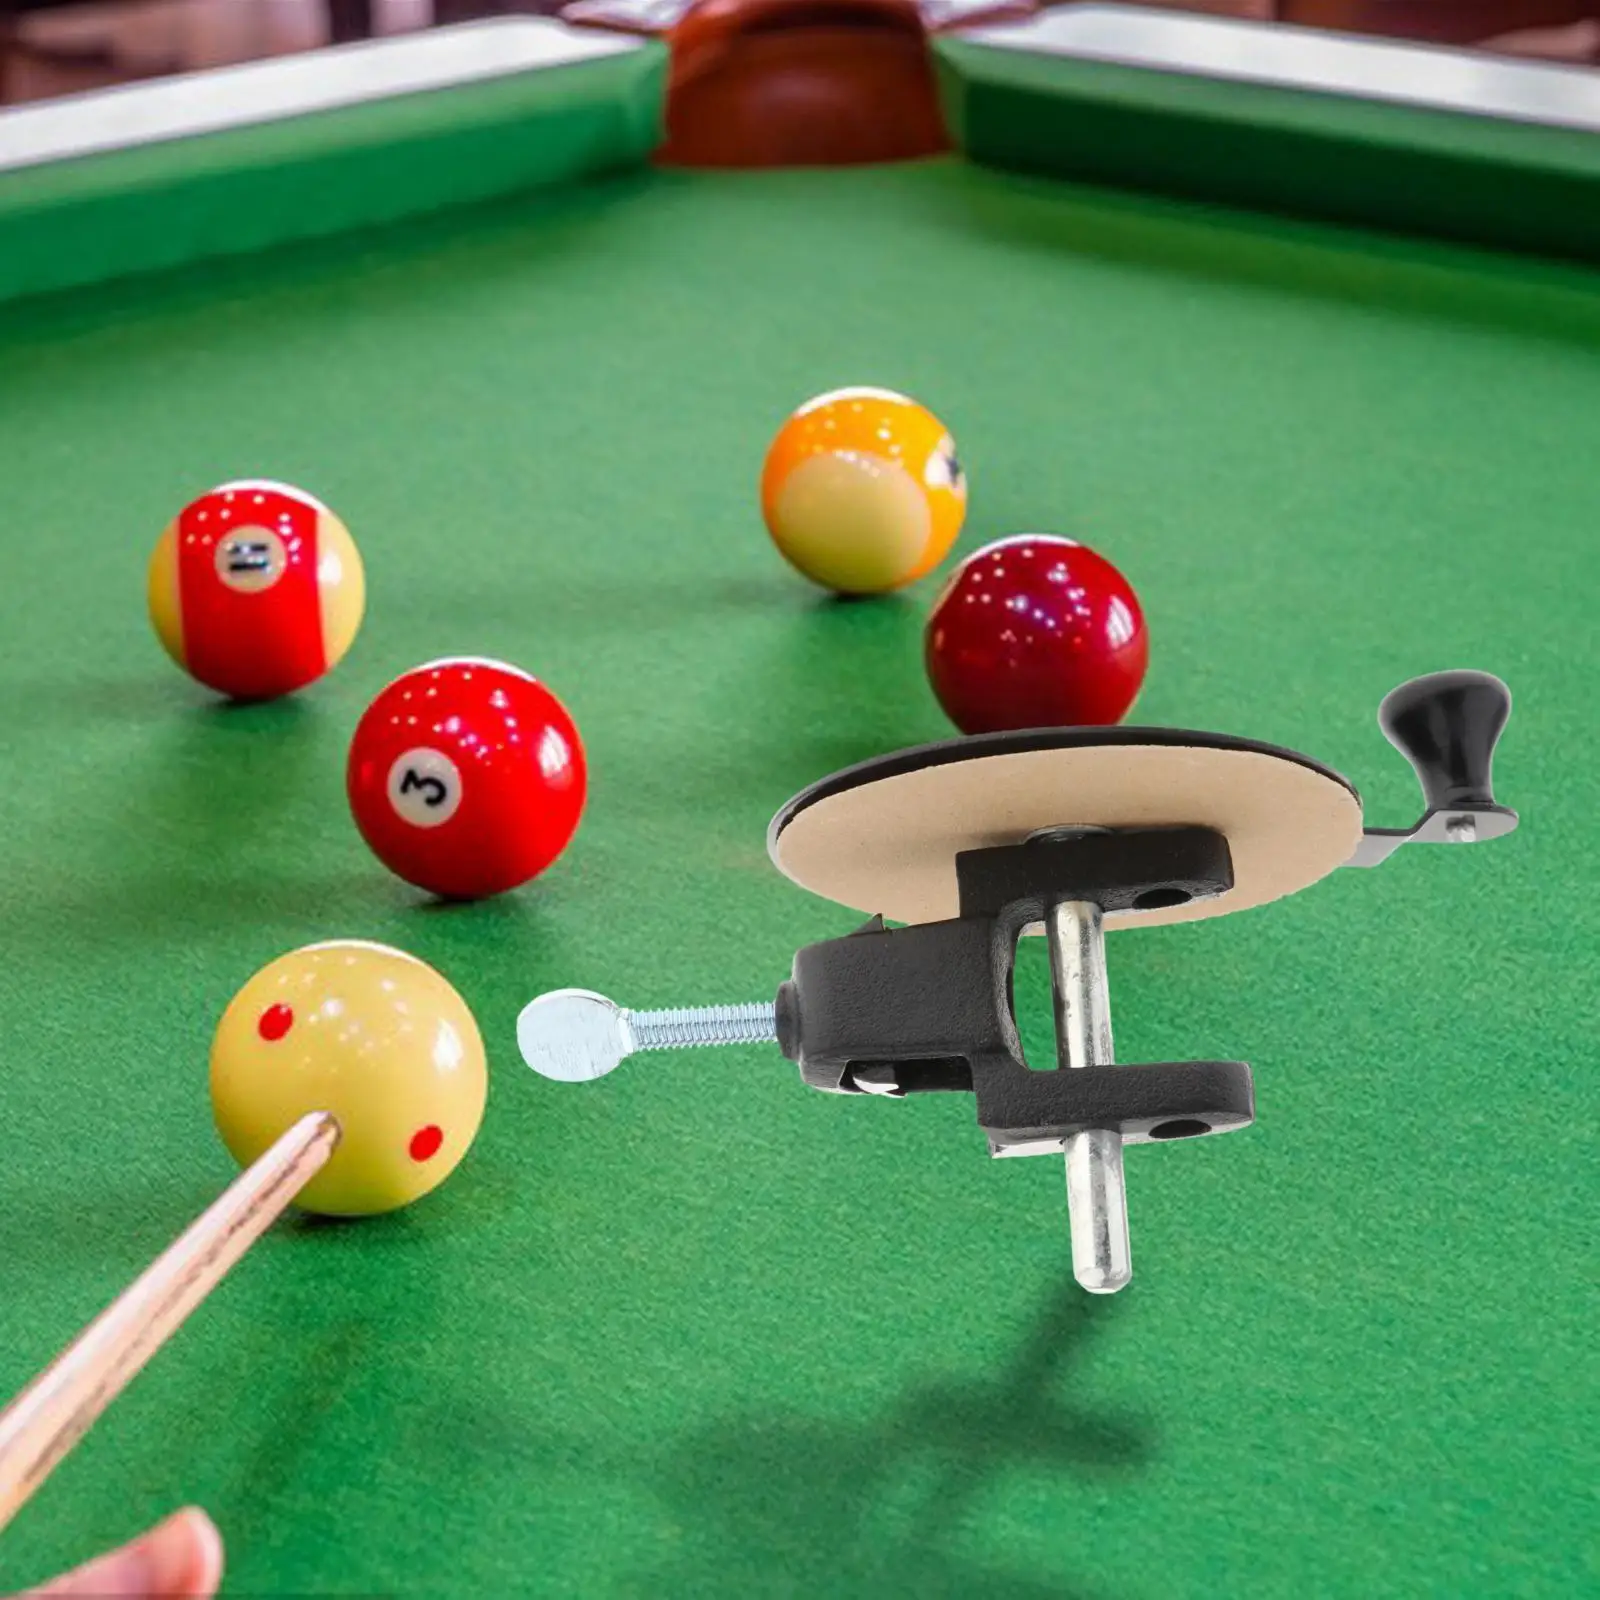 Billiard Pool Cue Tip Sander Pool Cue Maintenance Cue Tip Shaper Tool for Snooker Pool